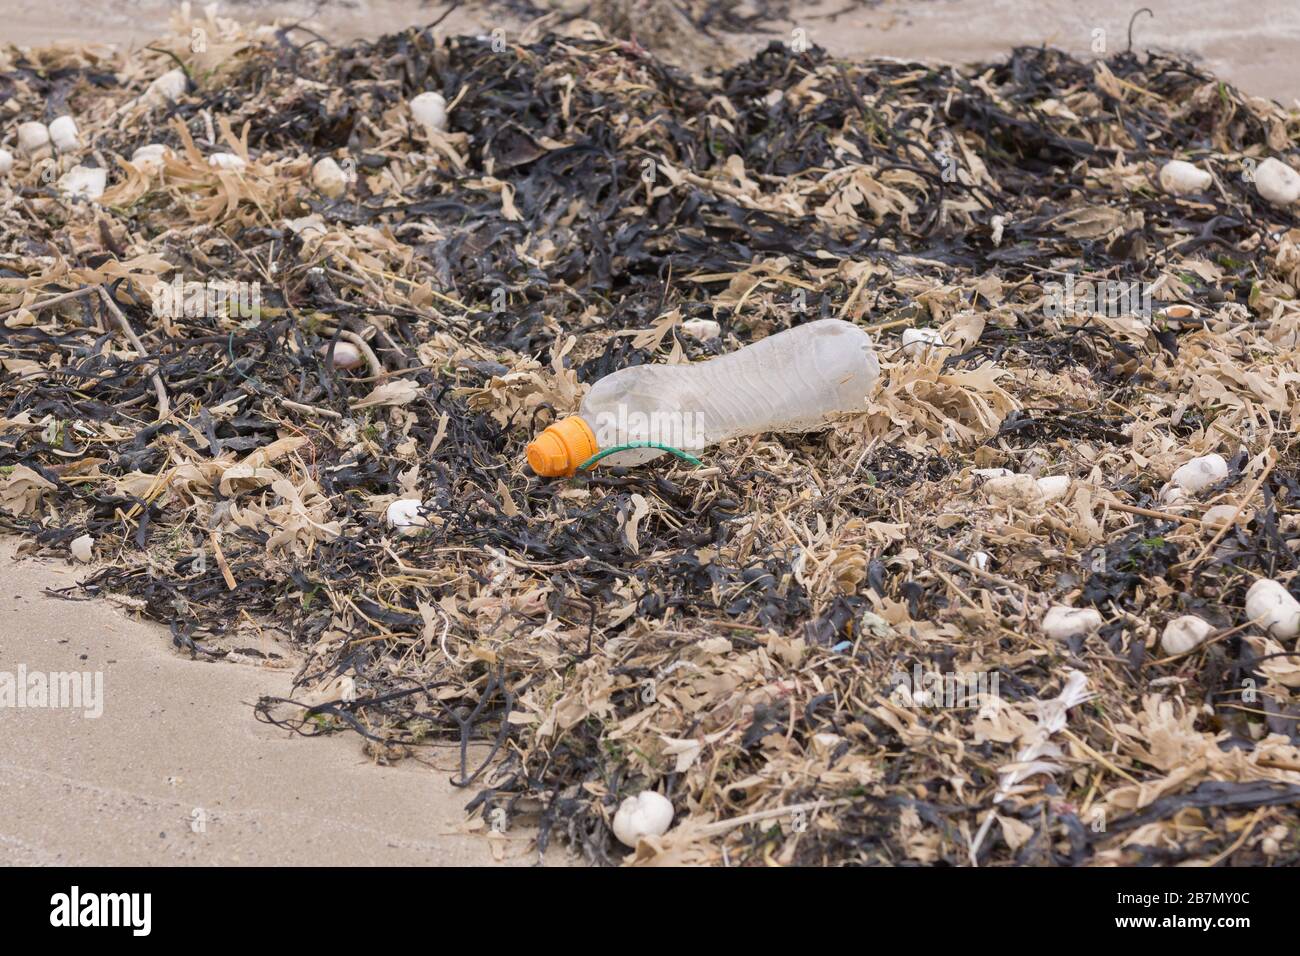 Bouteille de boisson en plastique entourée d'algues mortes et de coquillages sur la plage un exemple des nombreux morceaux de déchets dans la mer Banque D'Images